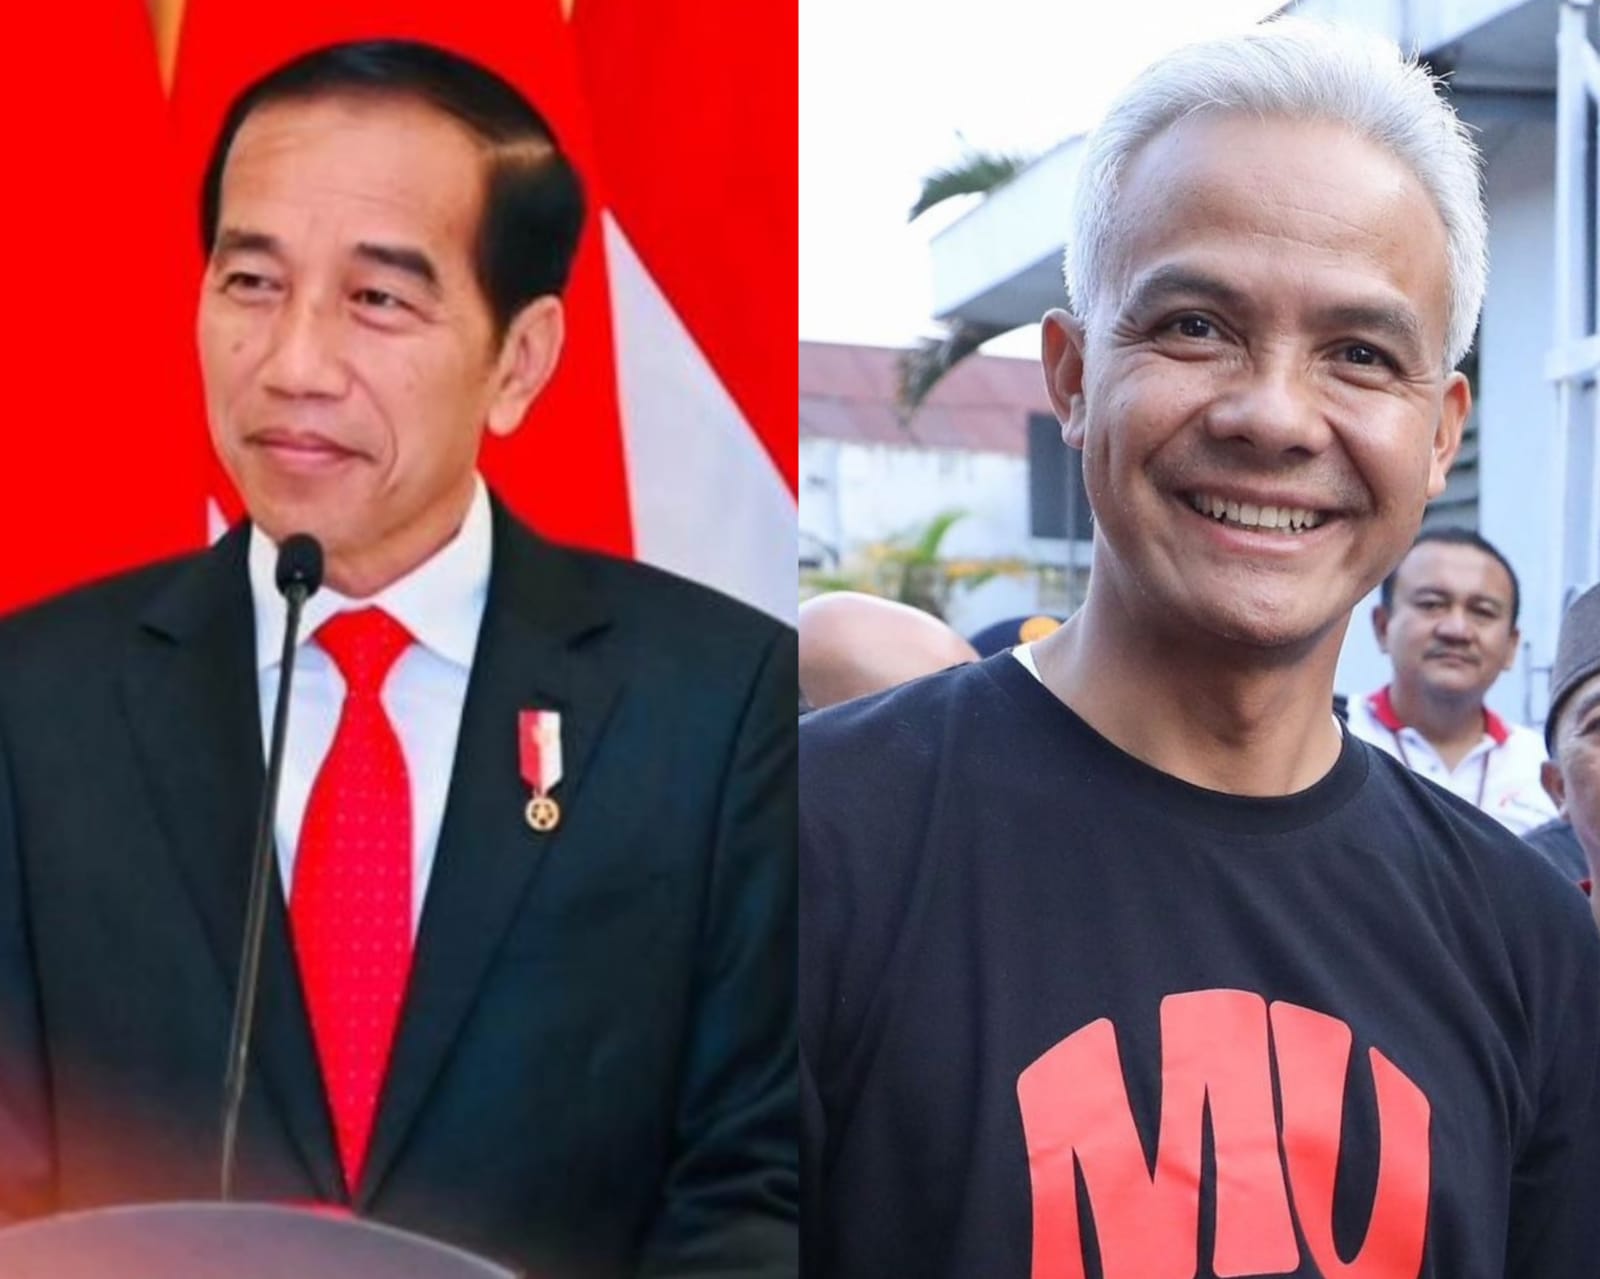 Presiden Joko Widodo (Jokowi) memberikan dukungan pada Ganjar Pranowo uang diusing sebagai bakal calon Presiden (Capres) PDIP. Kolase Instagram/@jokowi dan @ganjar_pranowo.